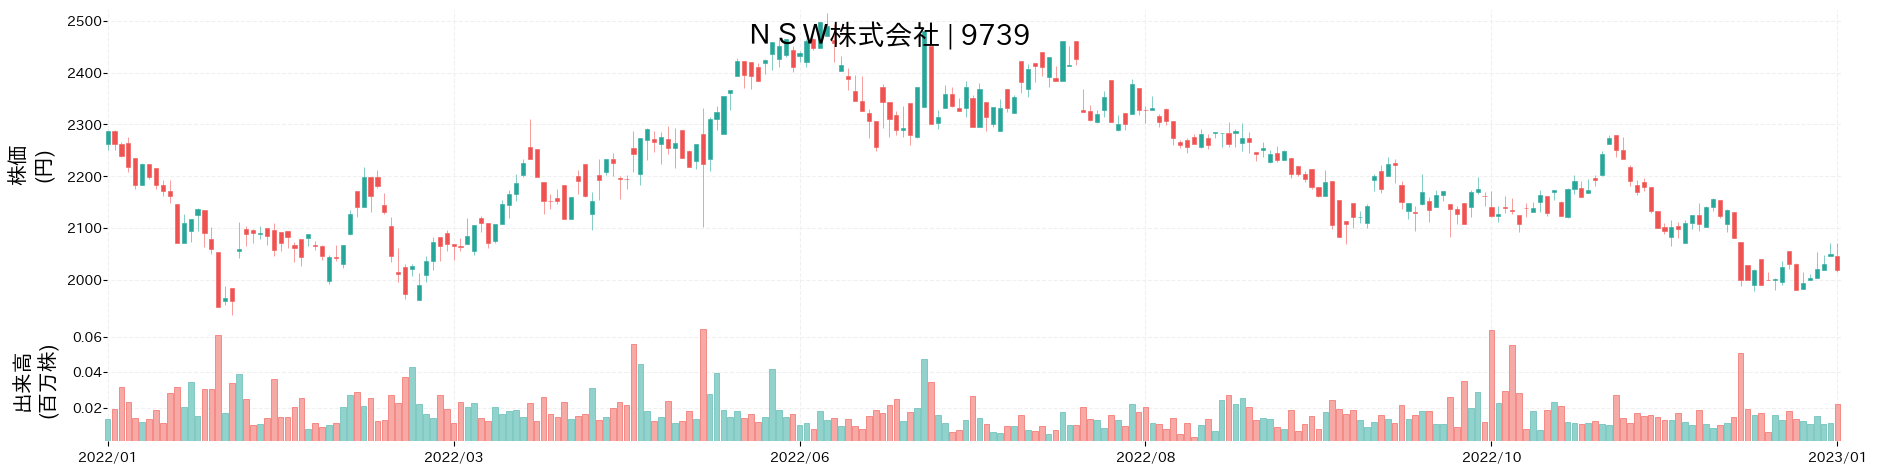 日本システムウエアの株価推移(2022)